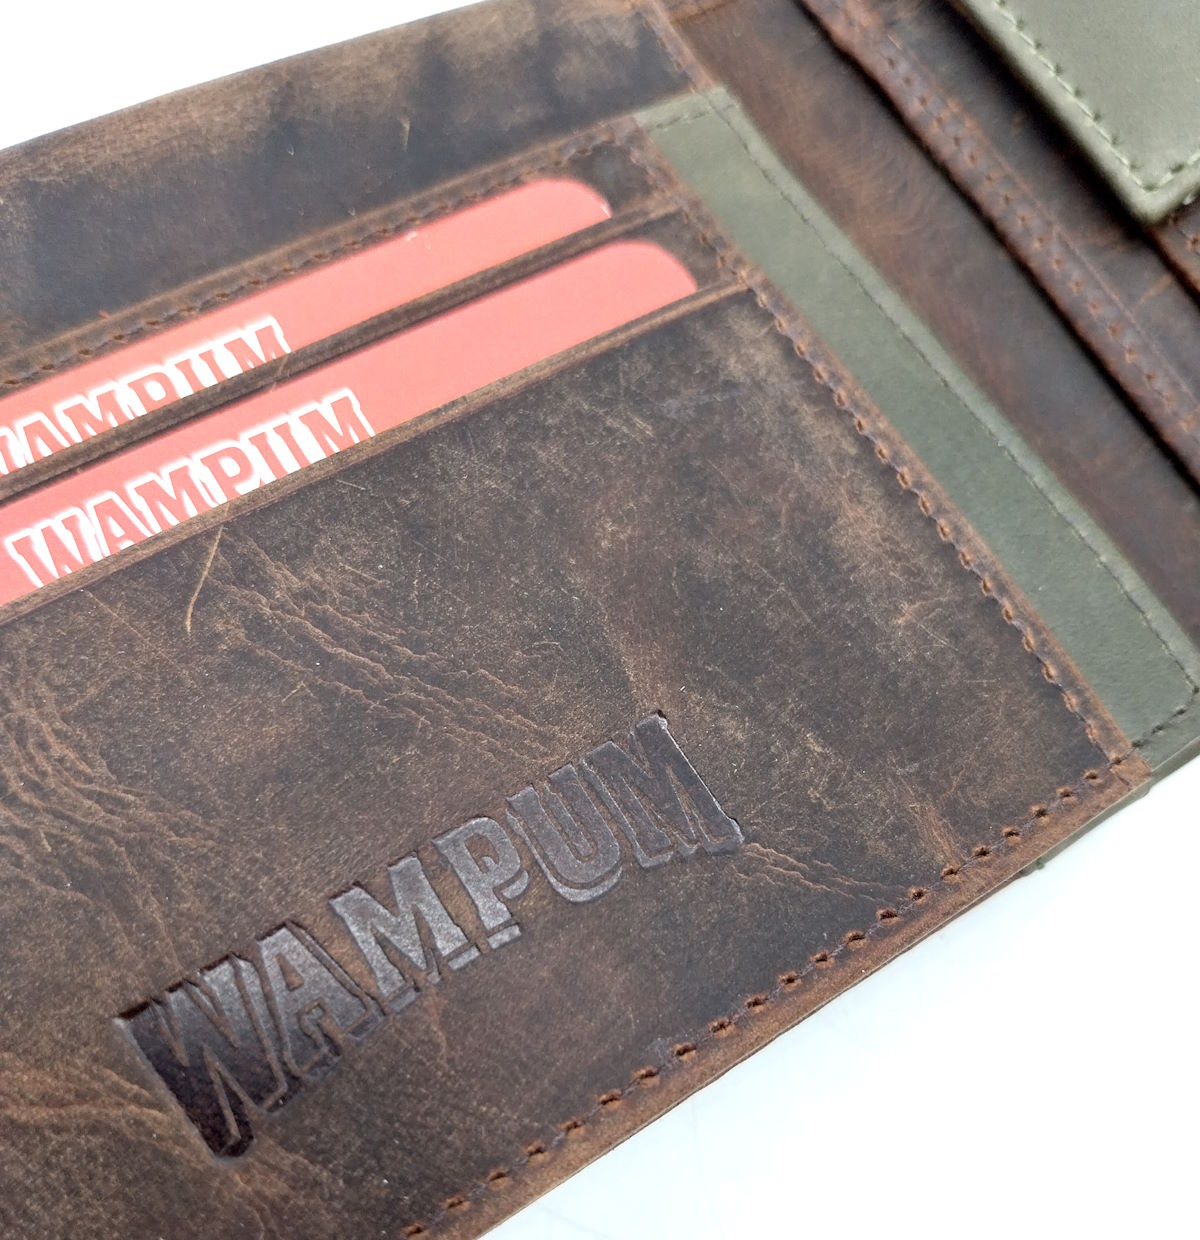 Genuine leather wallet, Wampum, art. pdk401-1